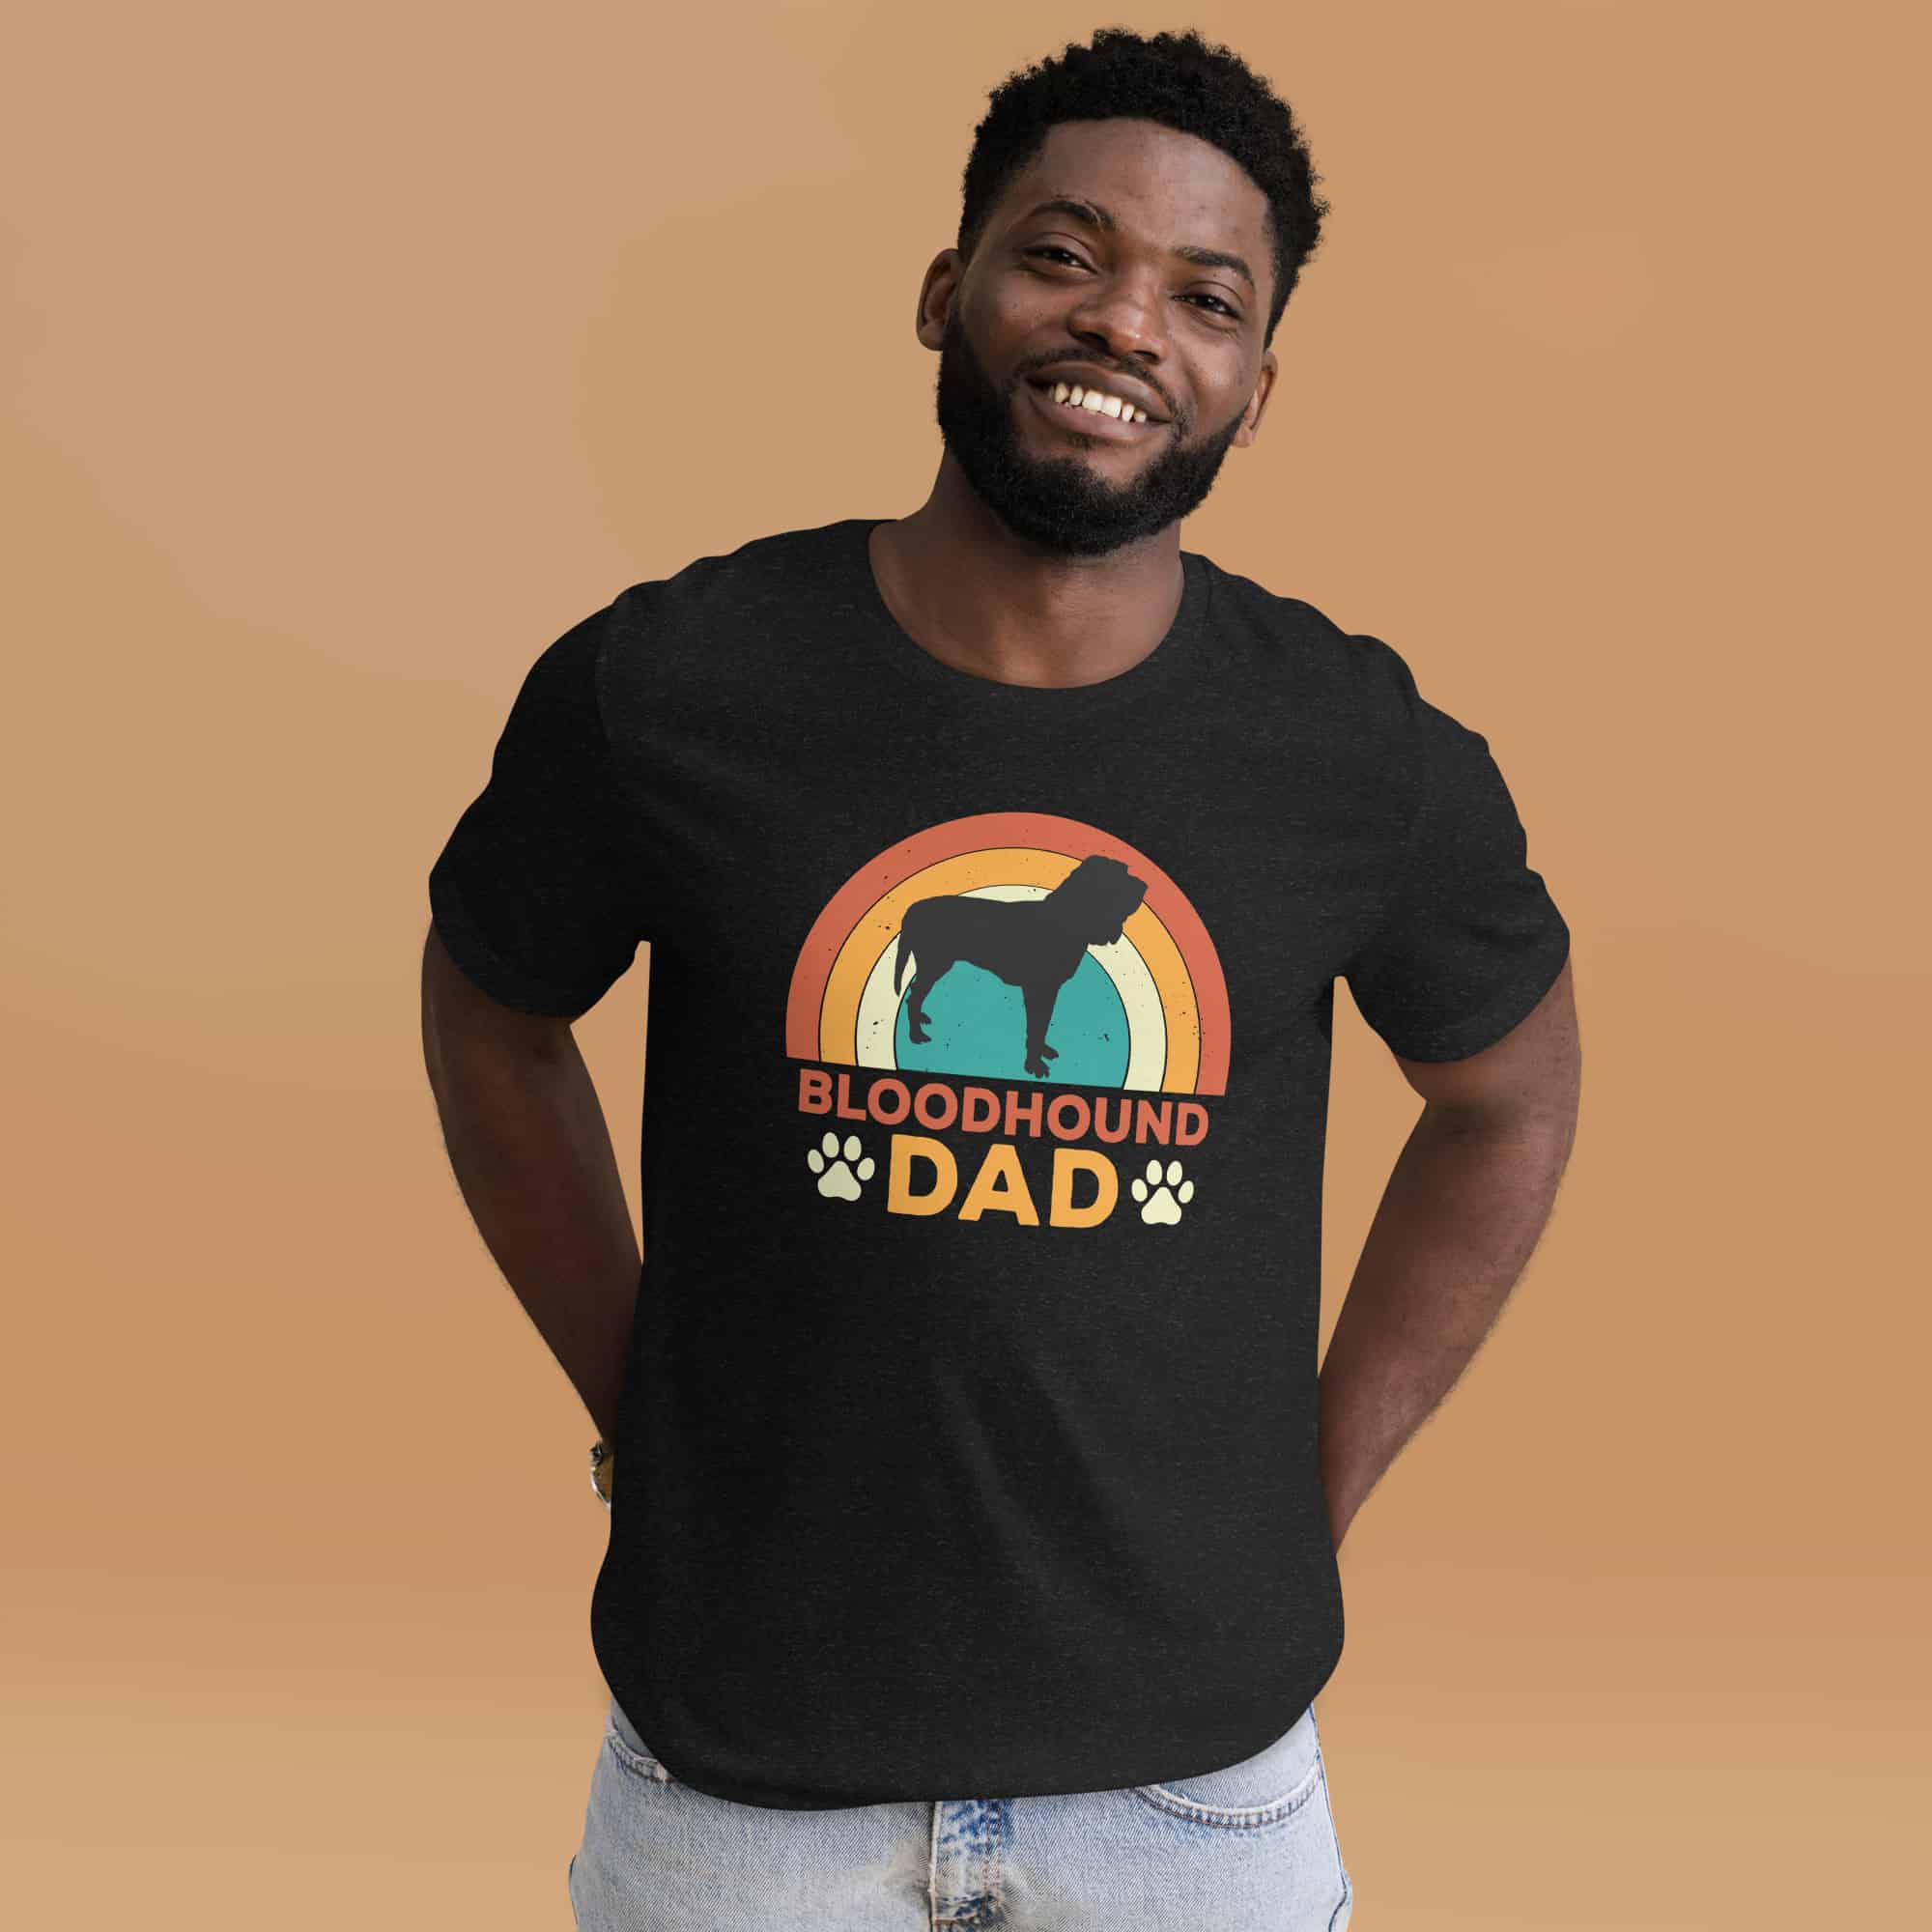 Bloodhound Dad Unisex T-Shirt